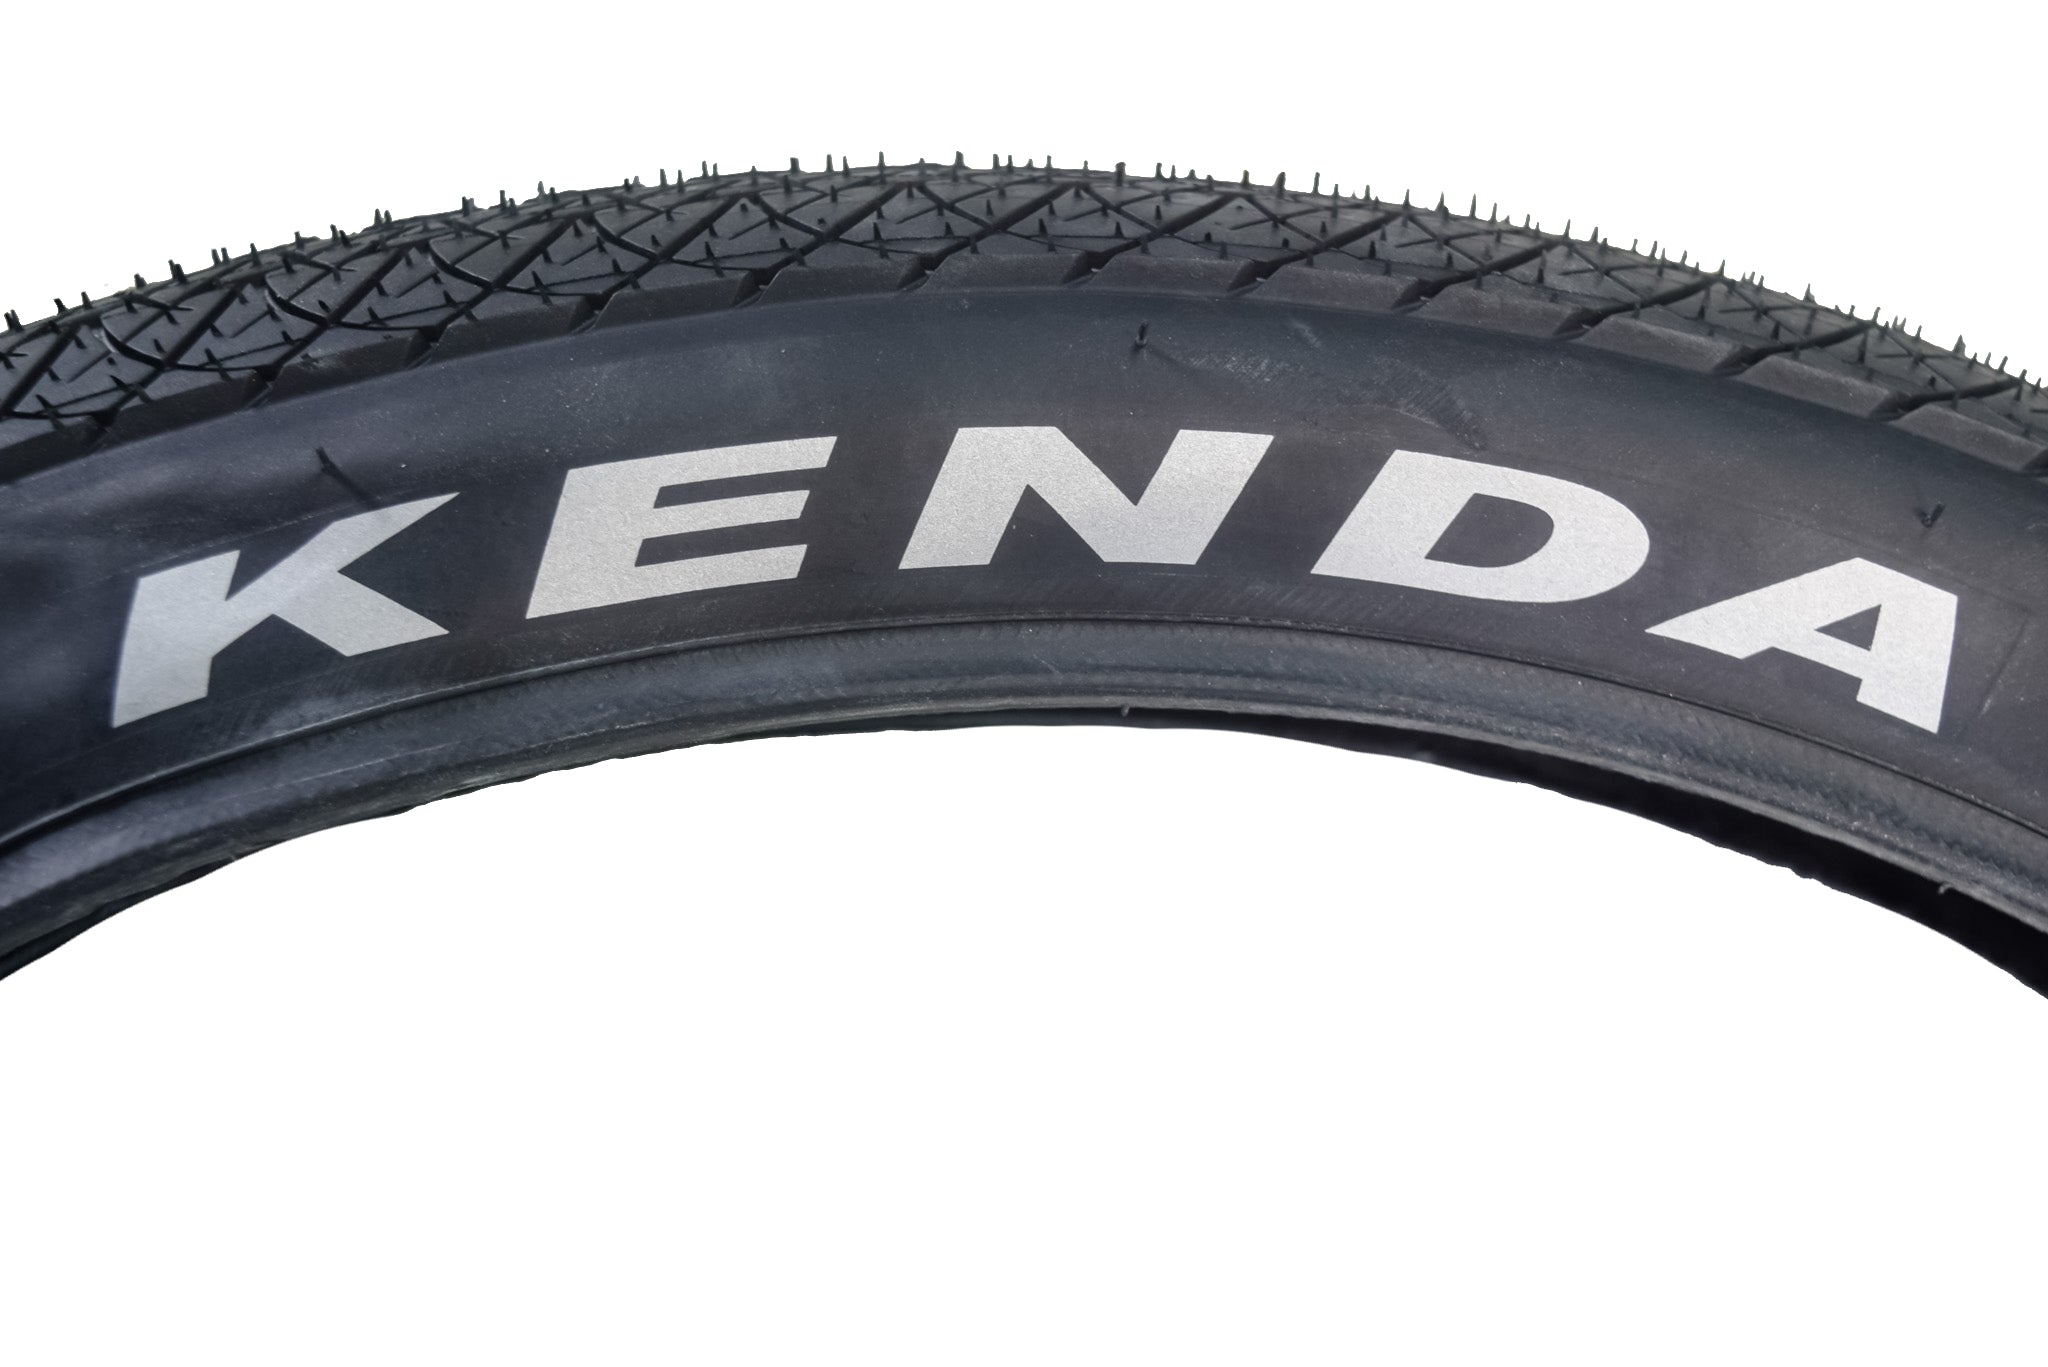 Kenda 3-Sixty Pro TR 120tpi Fold Black 20x2.25 Bicycle Tire & Keychain (Single)